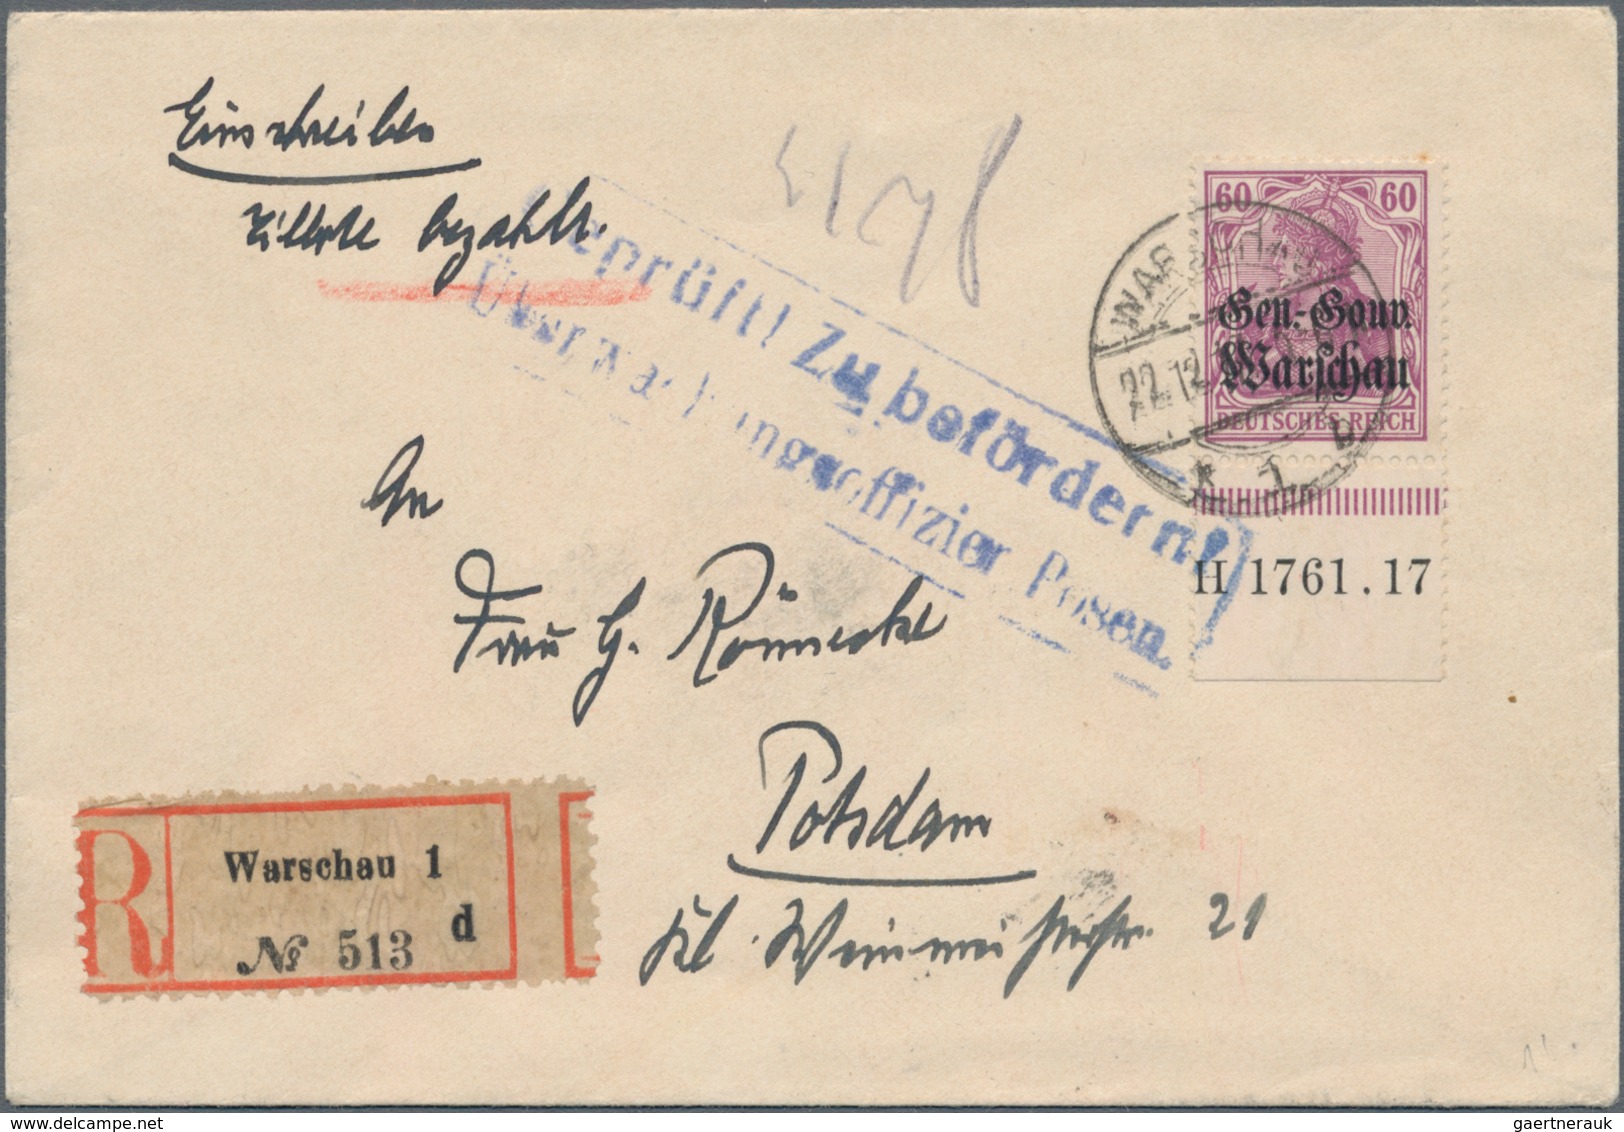 Deutsche Besetzung I. WK: 1915/1918, Belgien, Ober Ost und Polen, Lot von acht besseren Briefen, dab